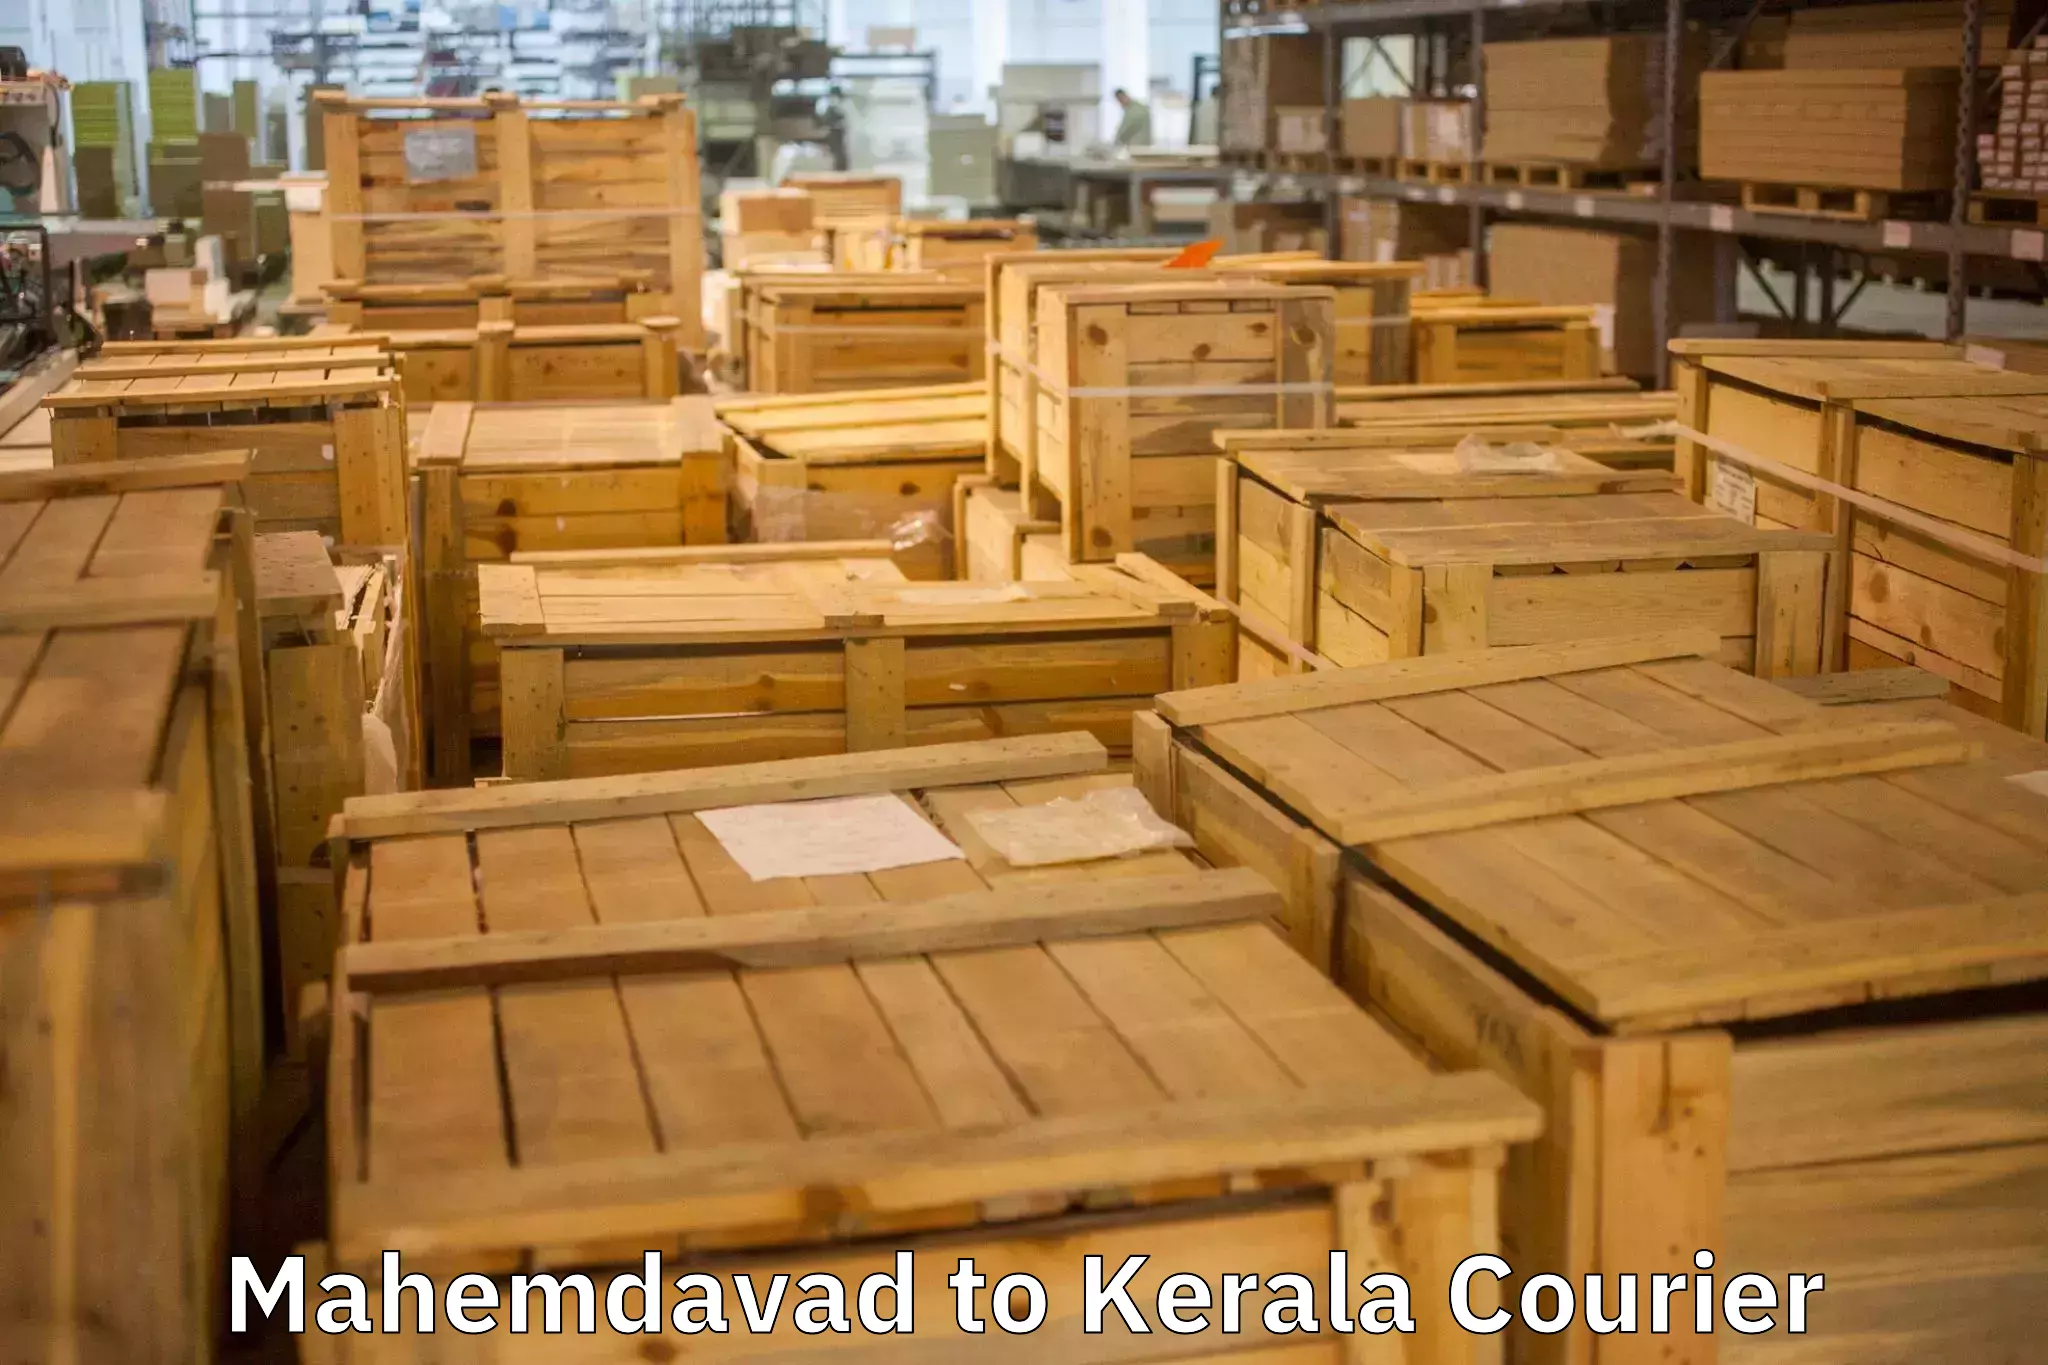 Trusted moving company Mahemdavad to Chavara